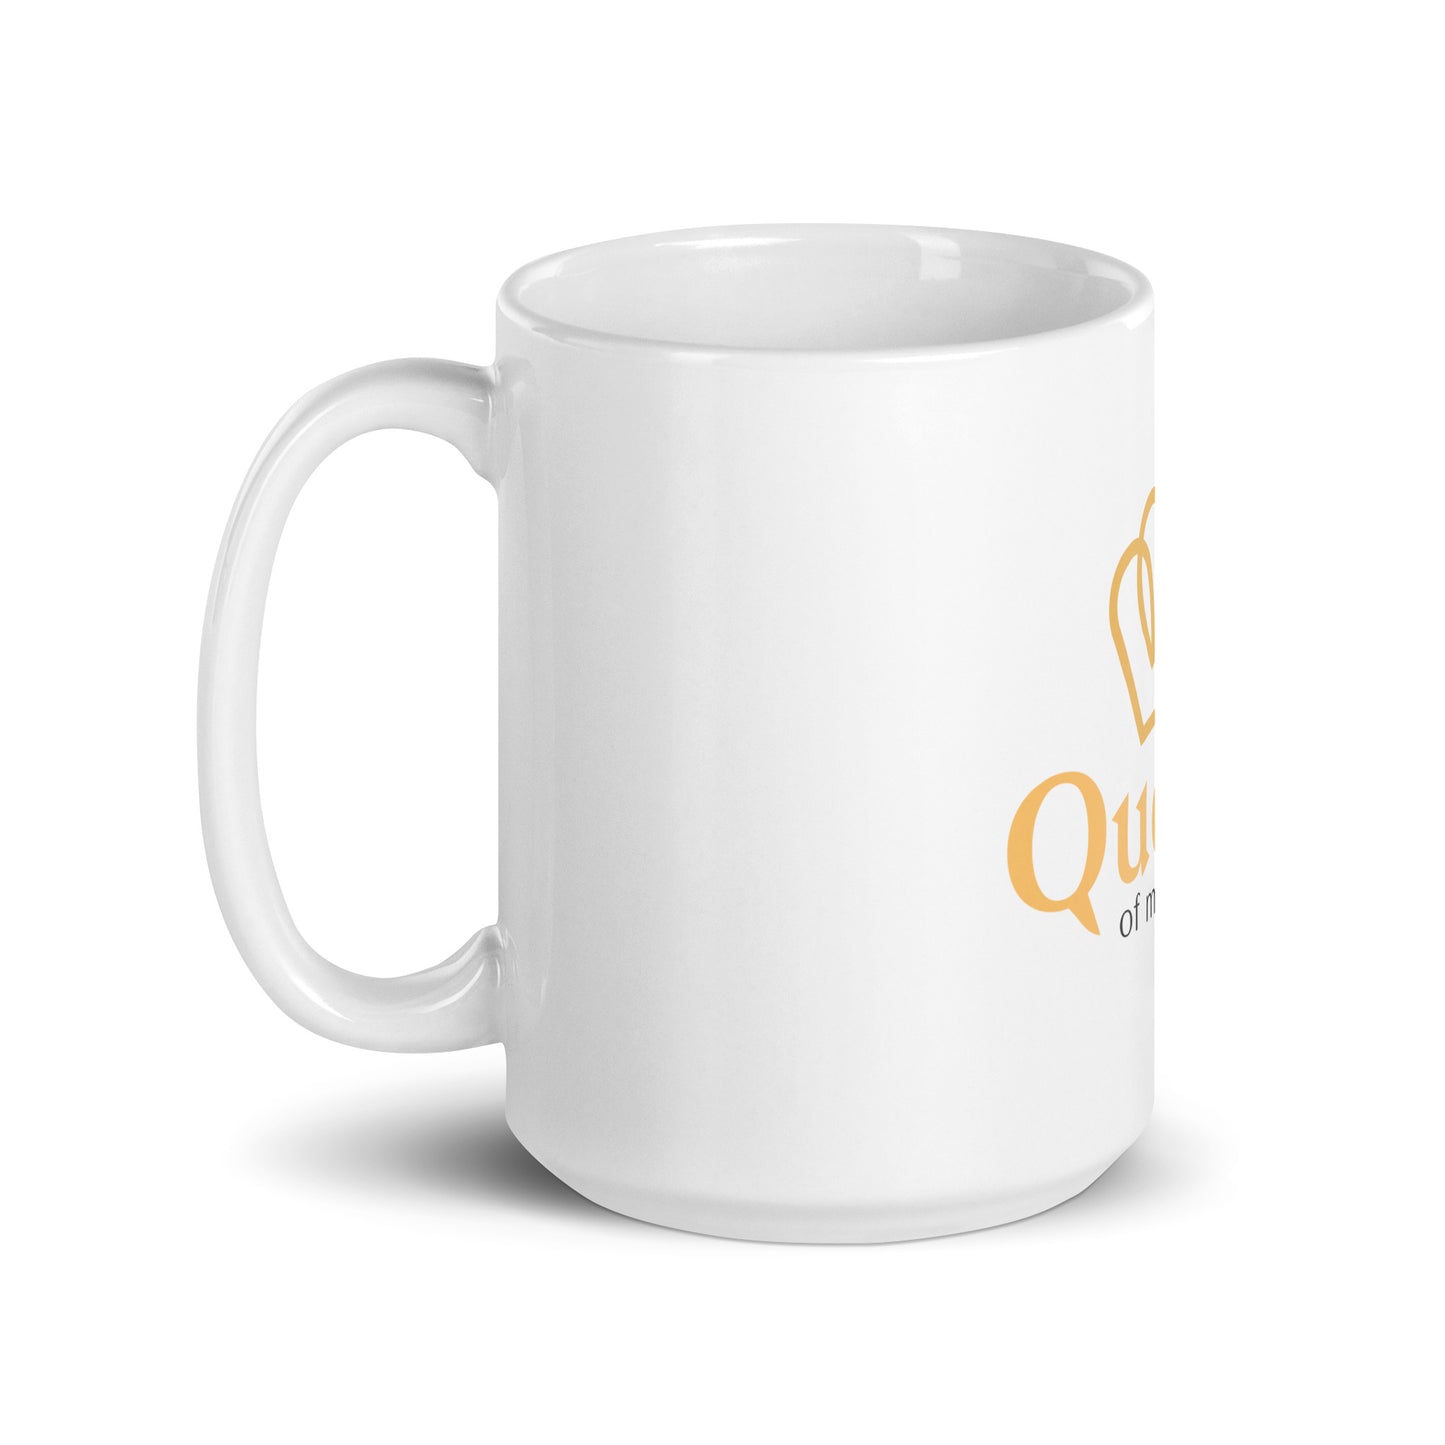 "Queen" ceramic mug